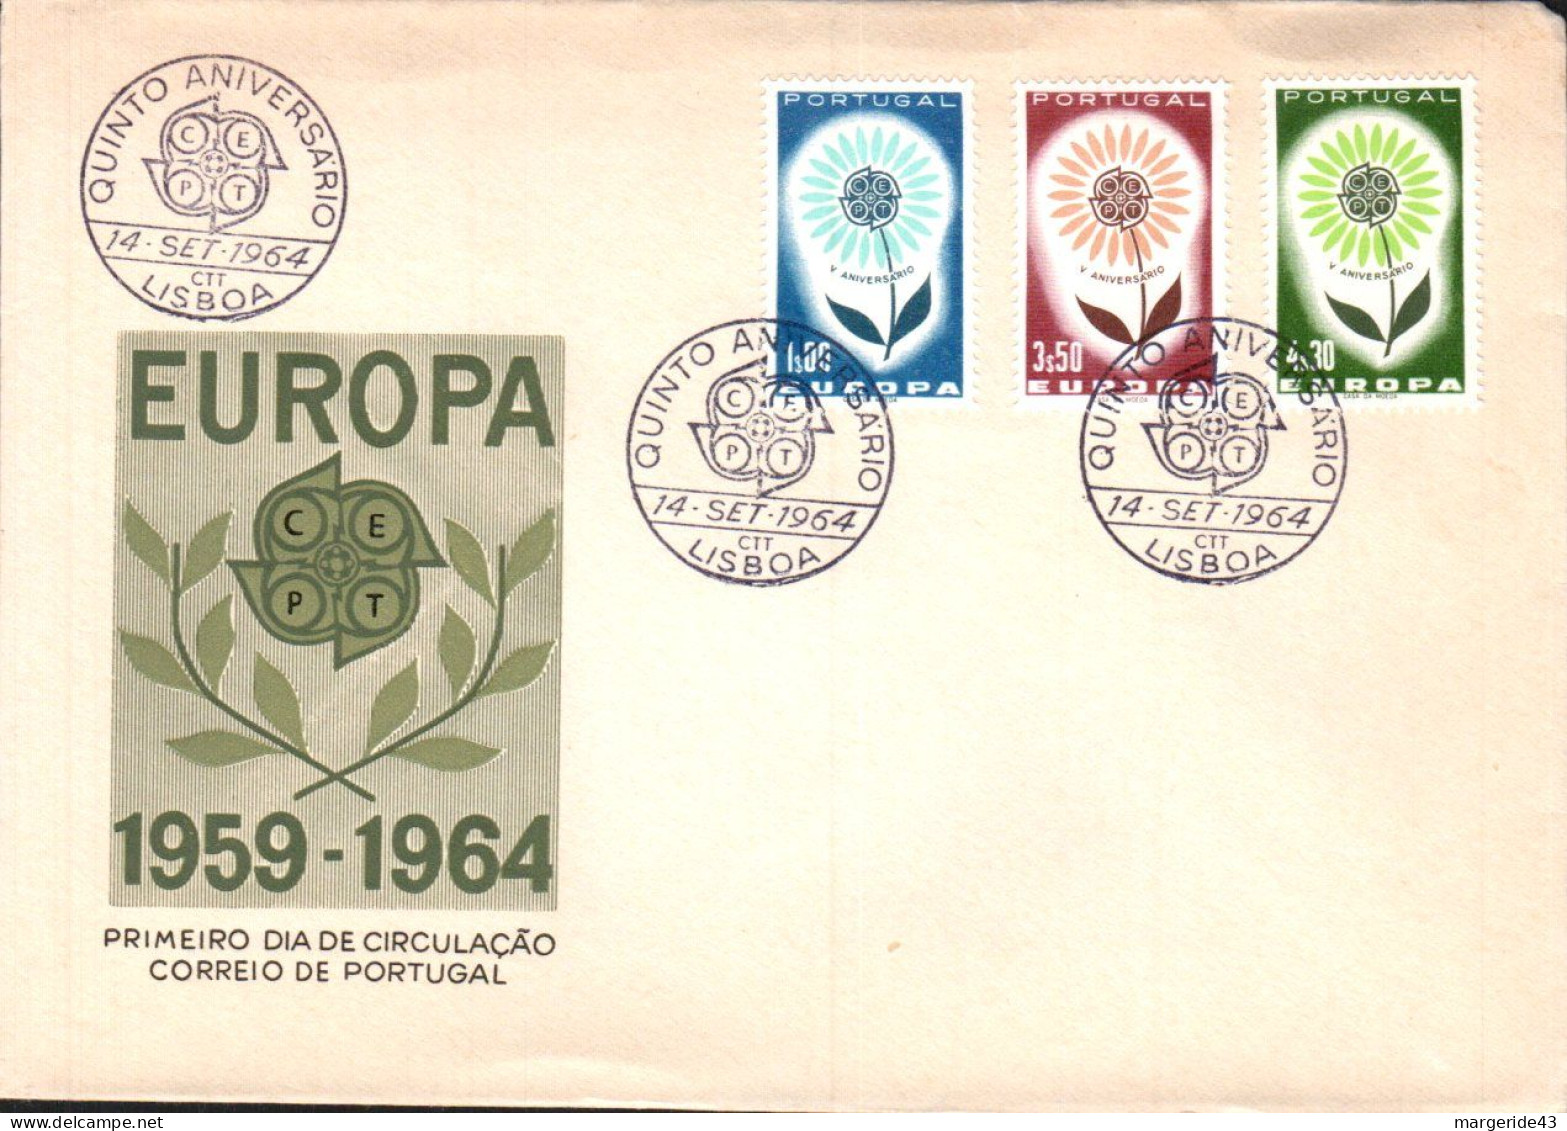 EUROPA 1966 PORTUGAL FDC - 1966